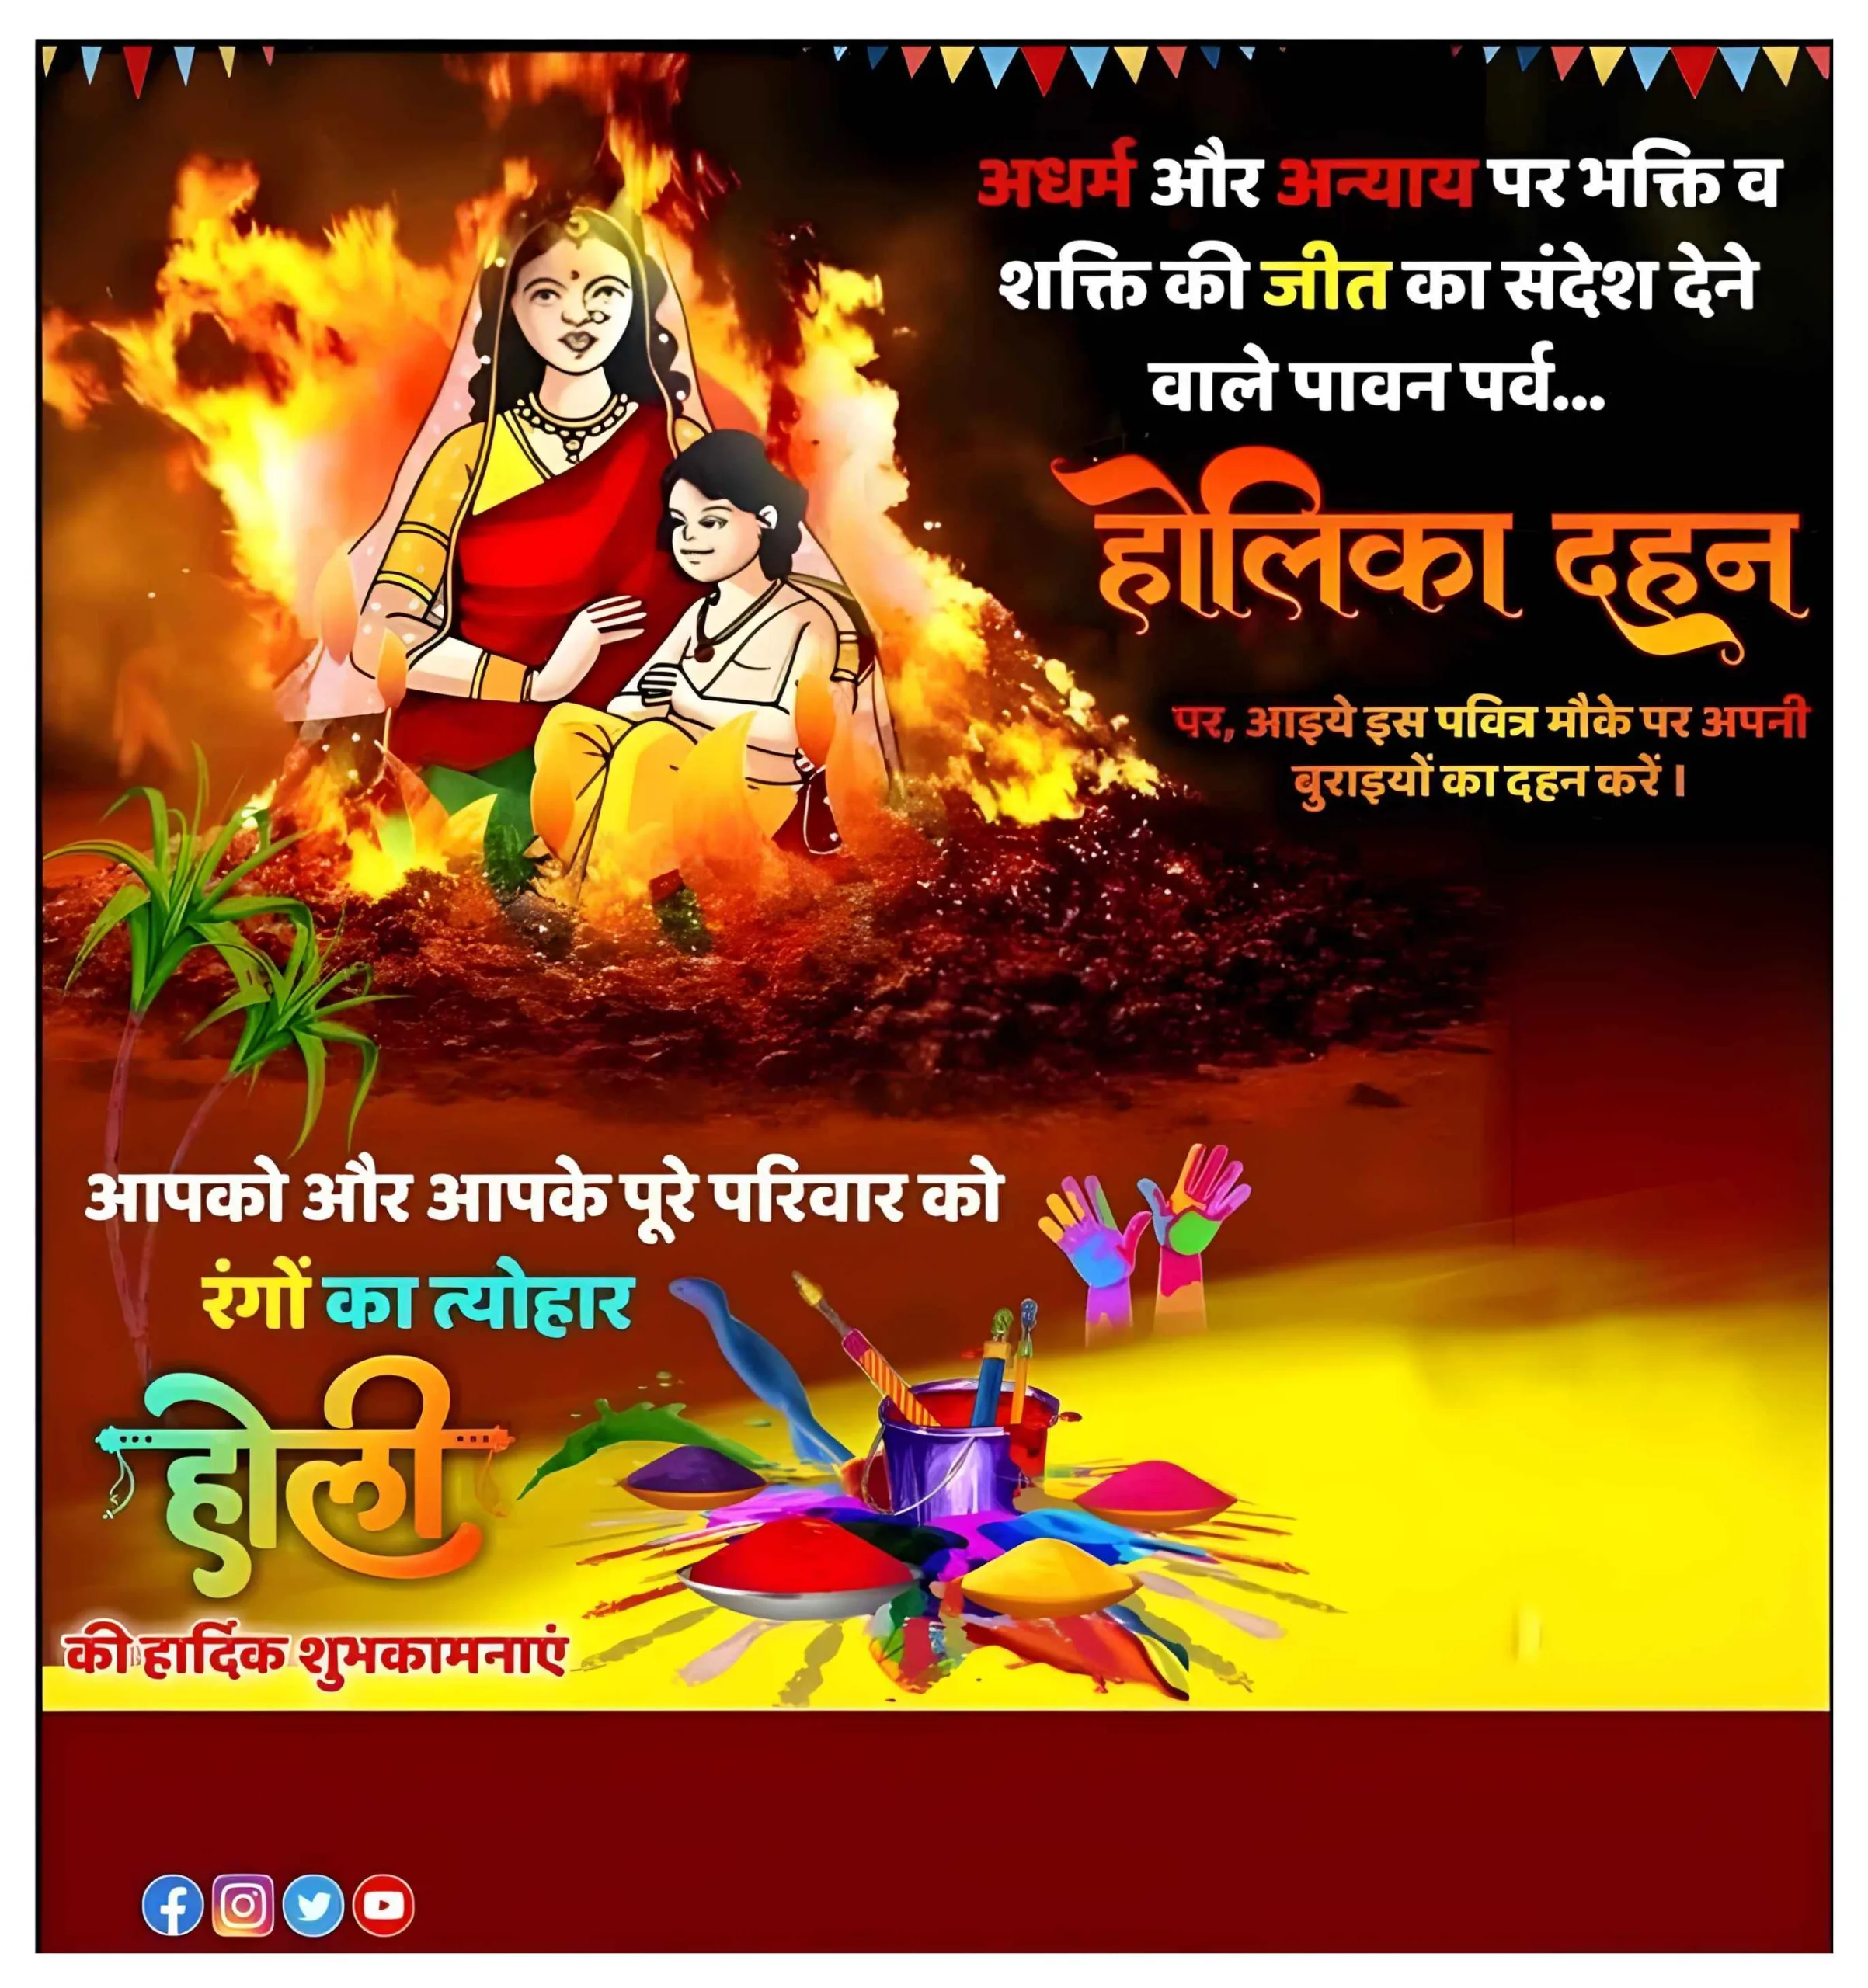 Holika Dahan Wishes Poster in Hindi Image HD